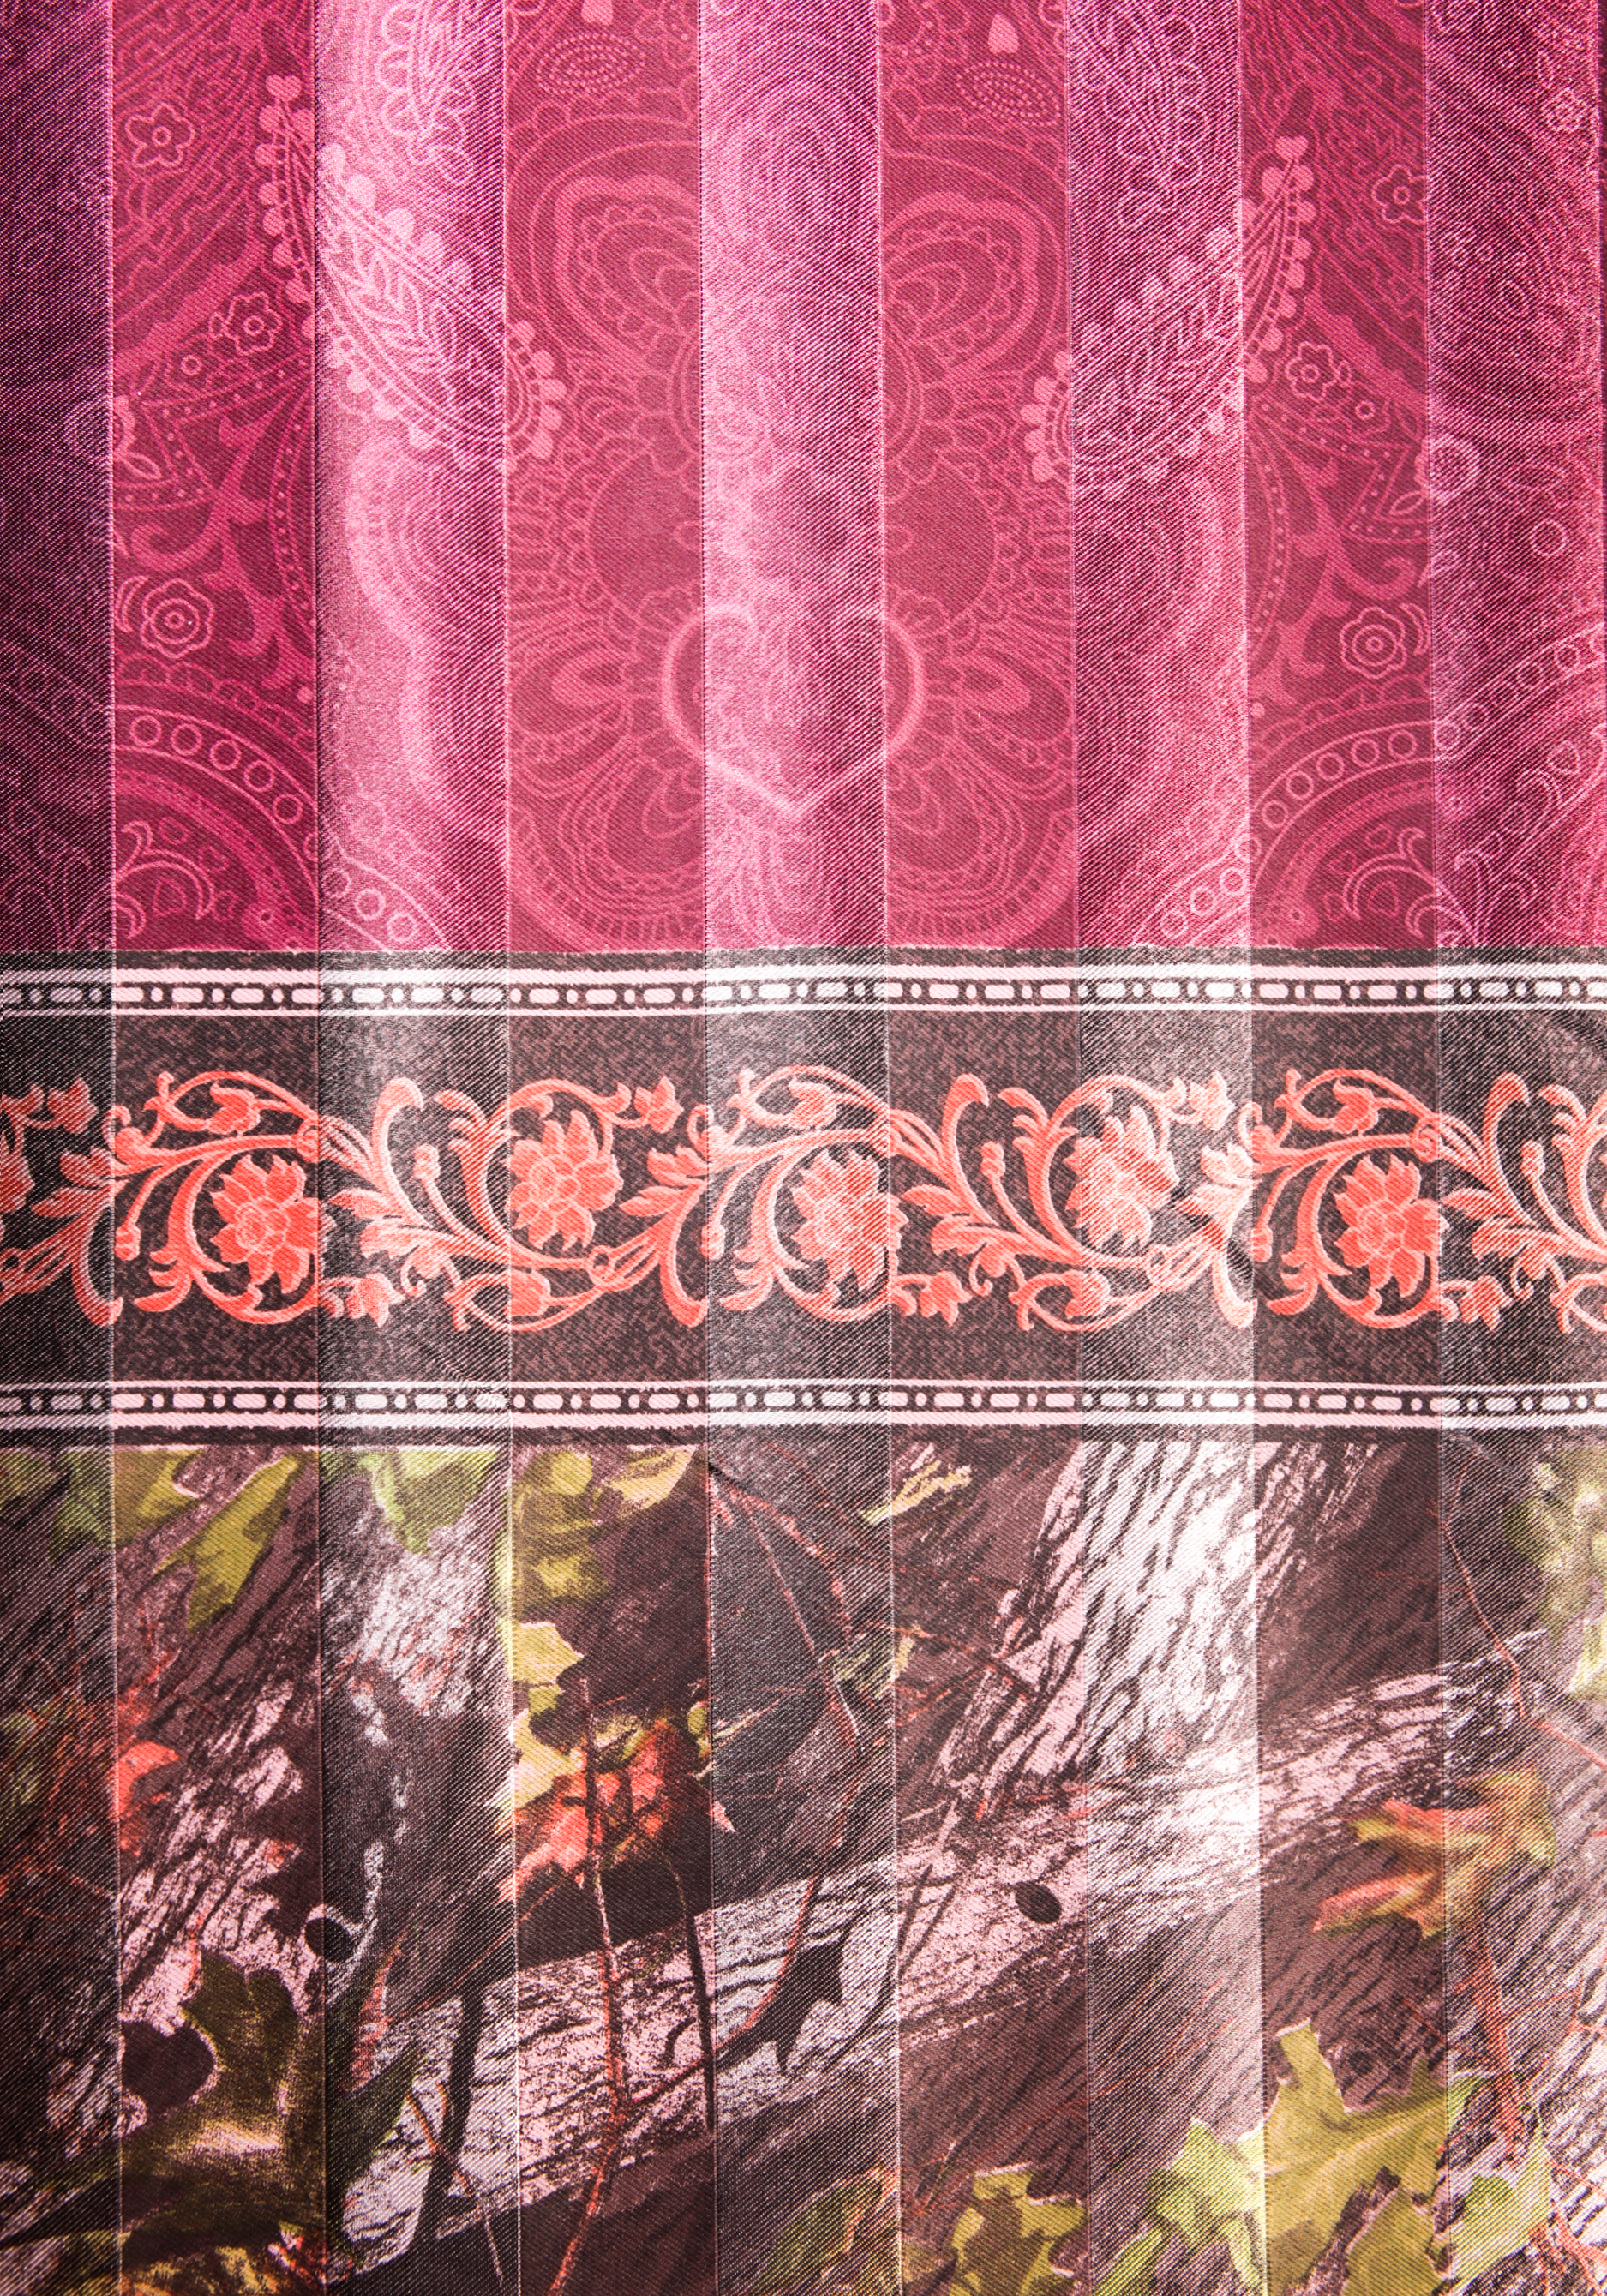 Комплект портьер "Пурпурное золото", цвет розовый, размер 270*150 - фото 3